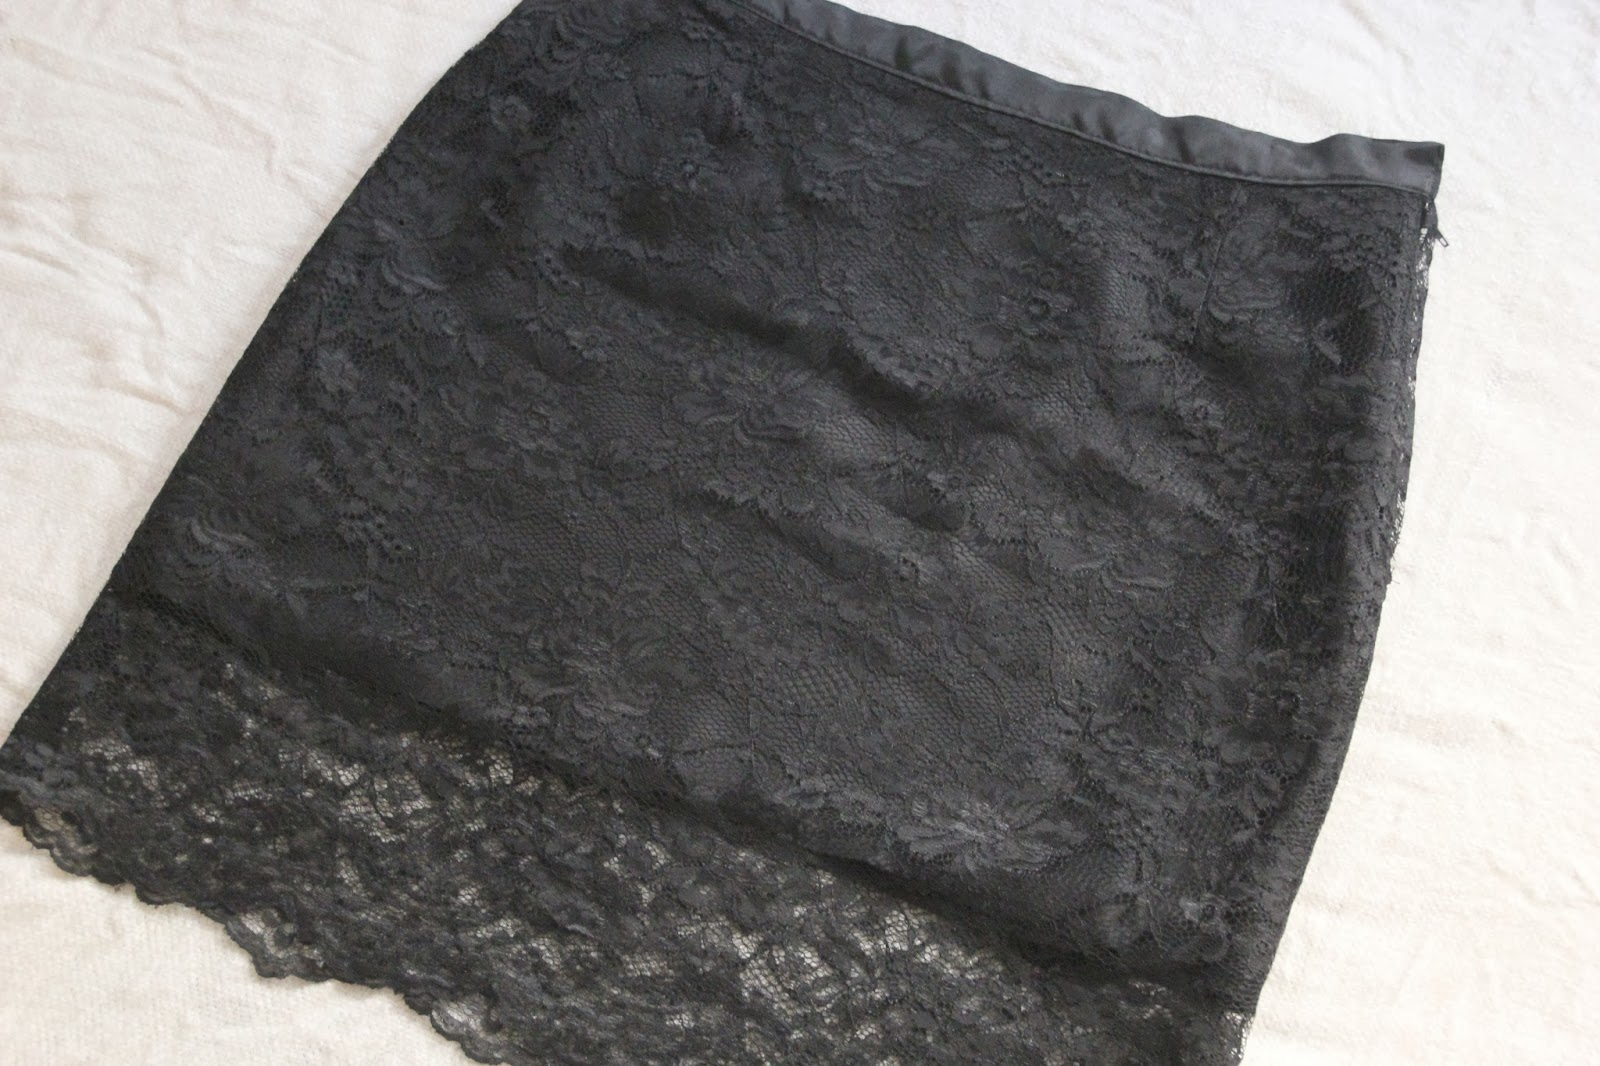 DIY Cómo hacer falda lencera o falda de encaje. Blog de costura y diy.